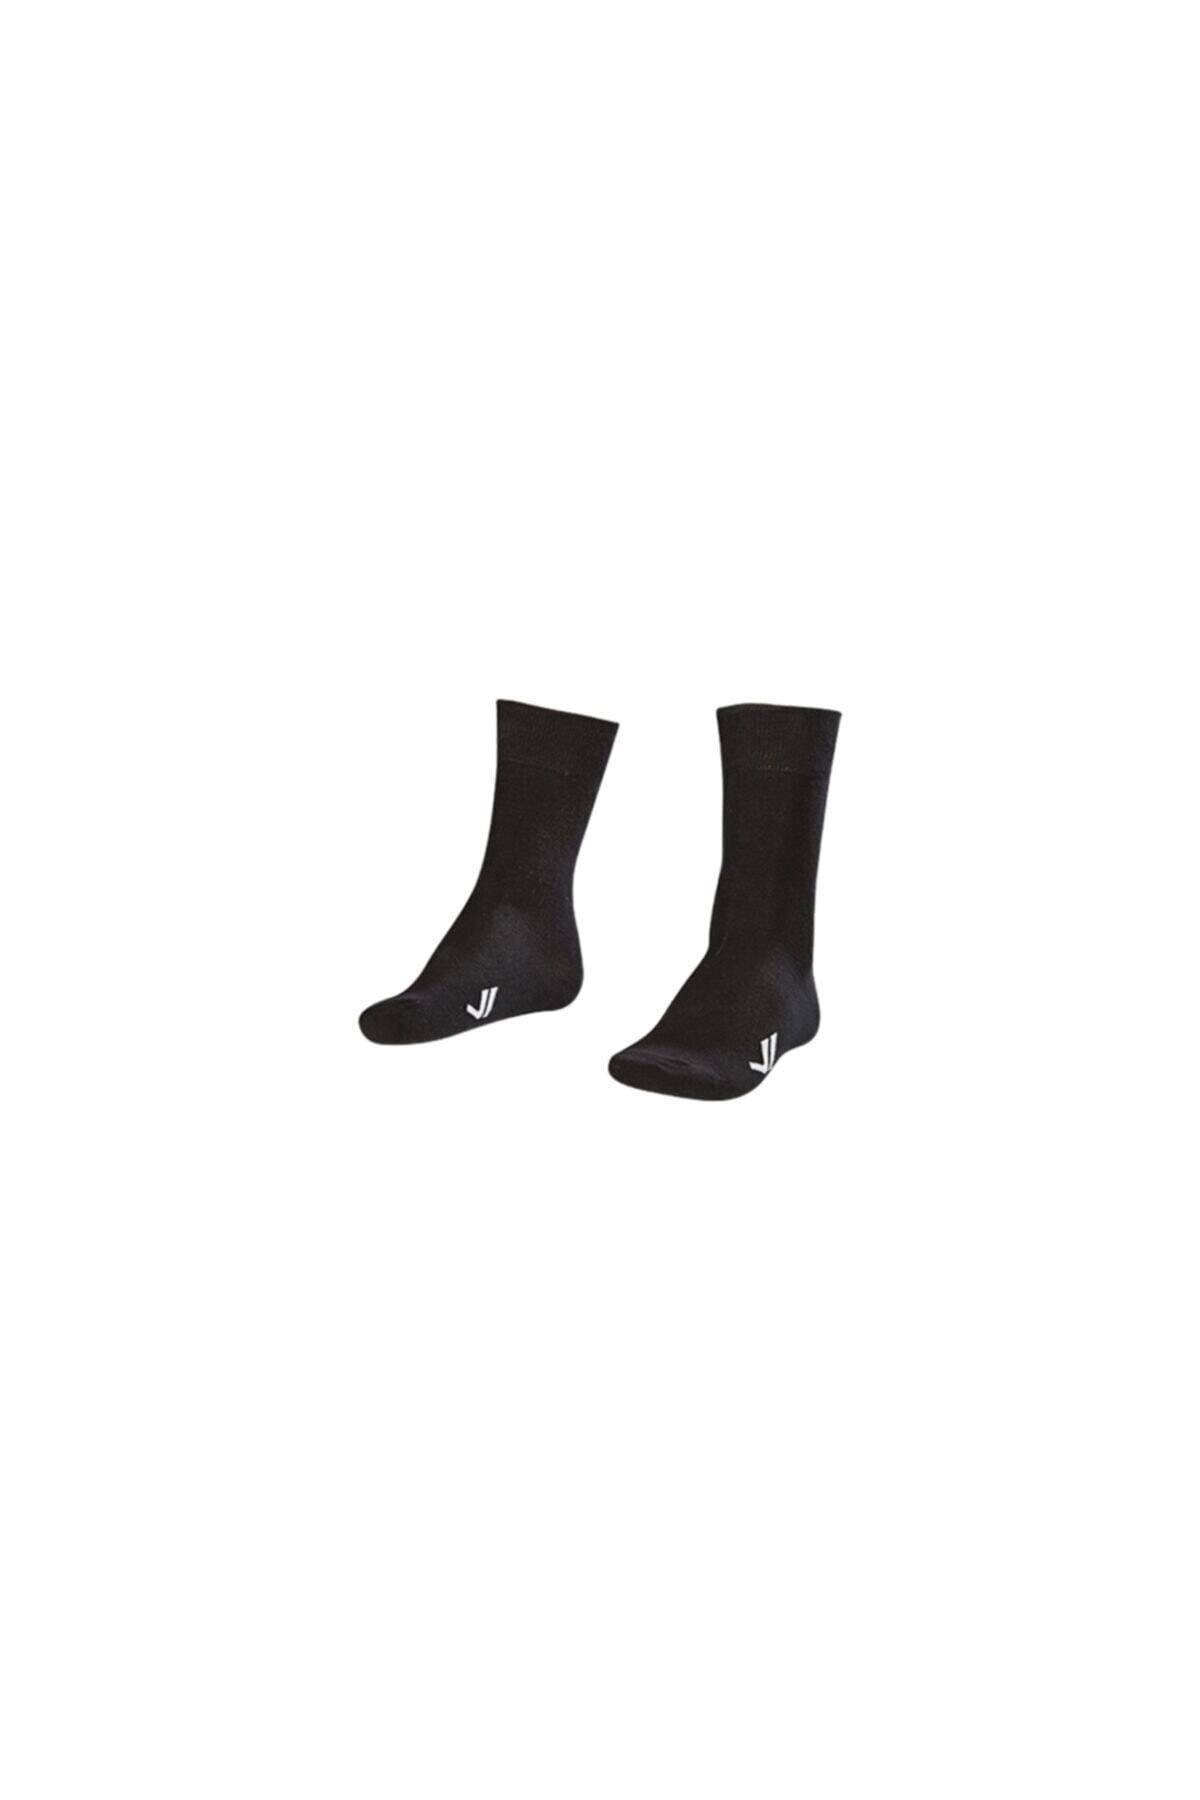 Lescon La-2186 Siyah 2'li Klasık Çorap 40-45 Numara